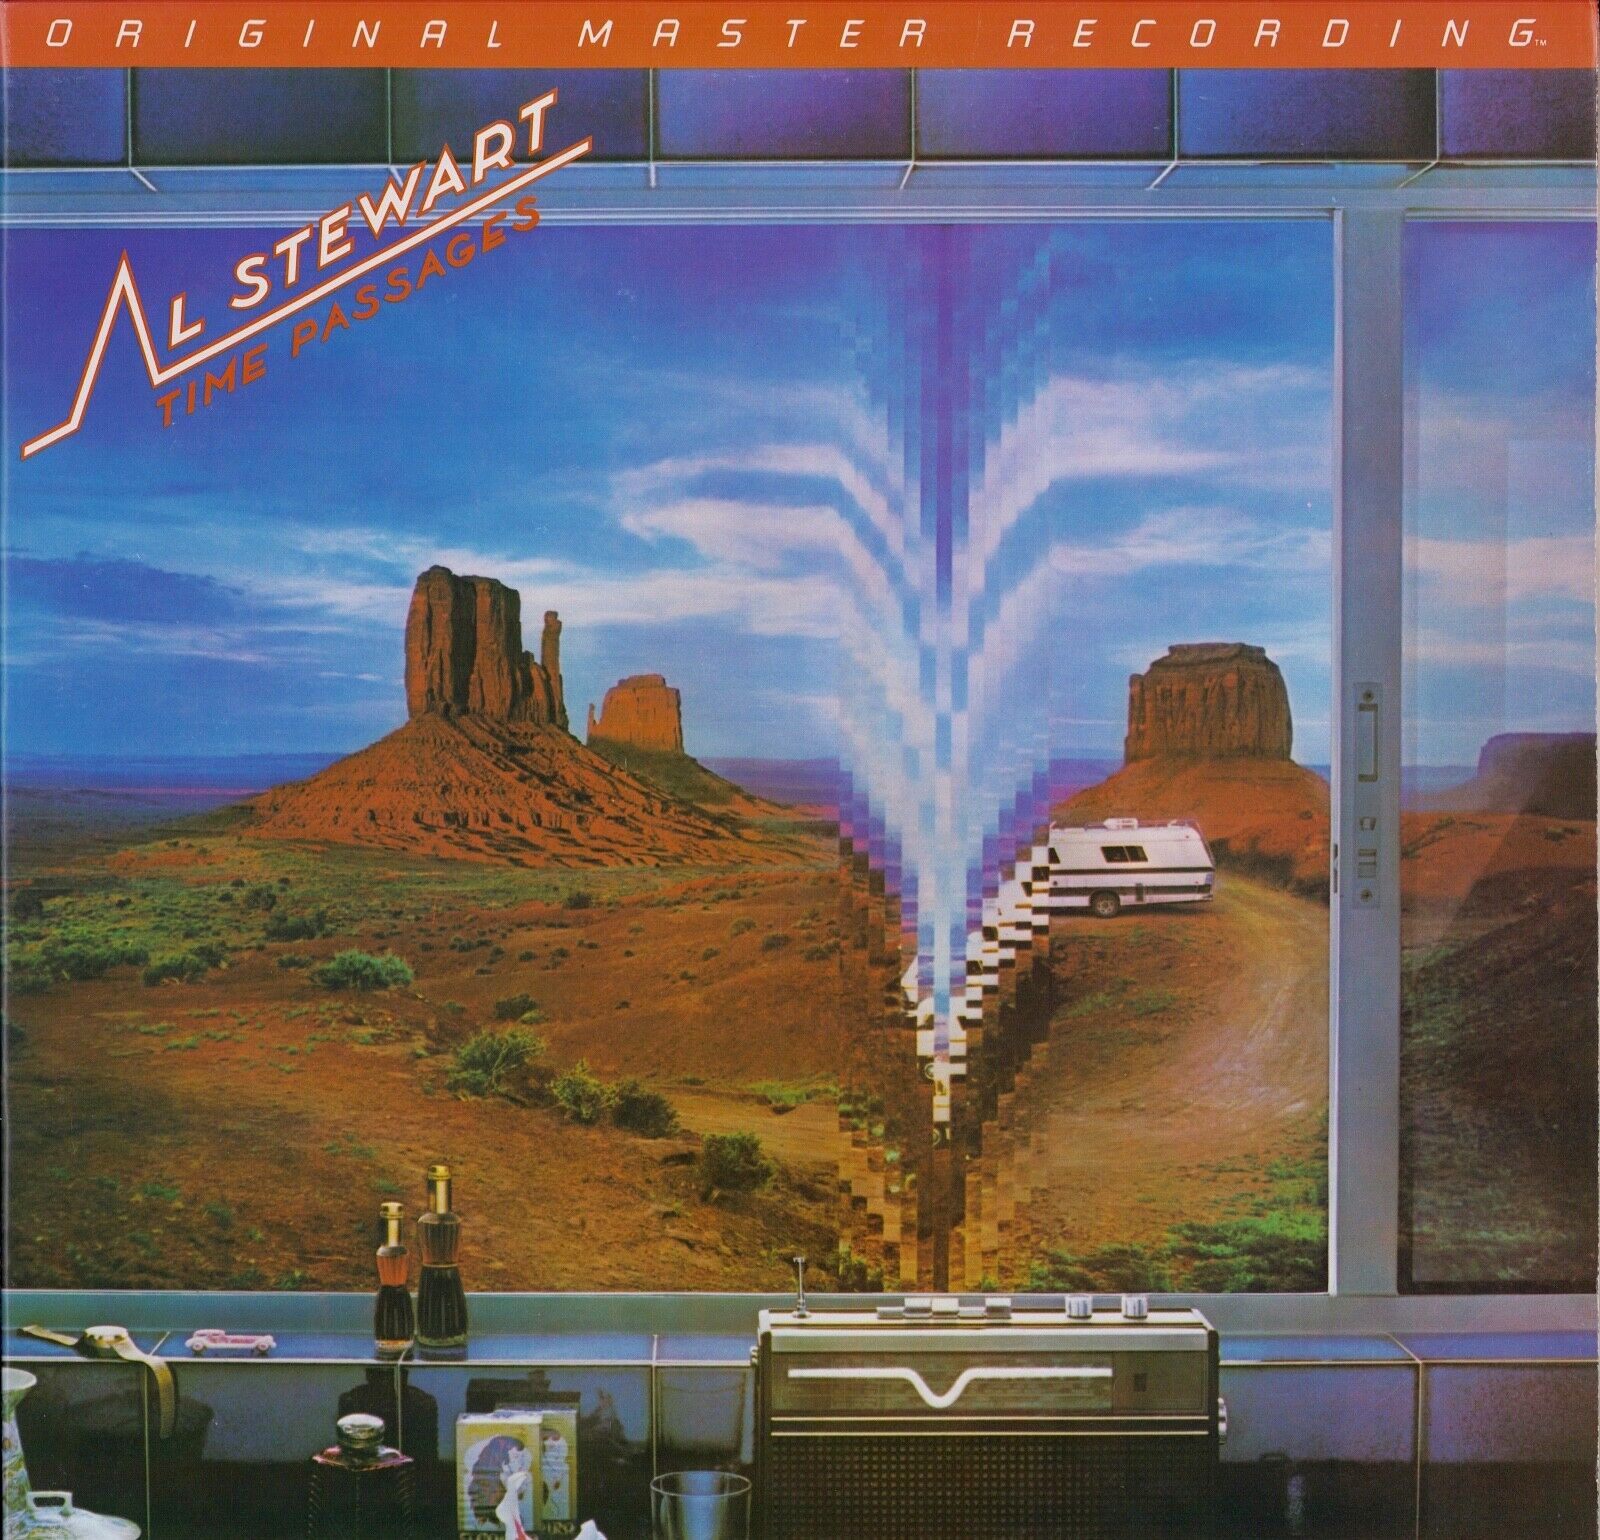 Al Stewart ‎- Time Passages Vinyl LP US Halfspeed Mastered